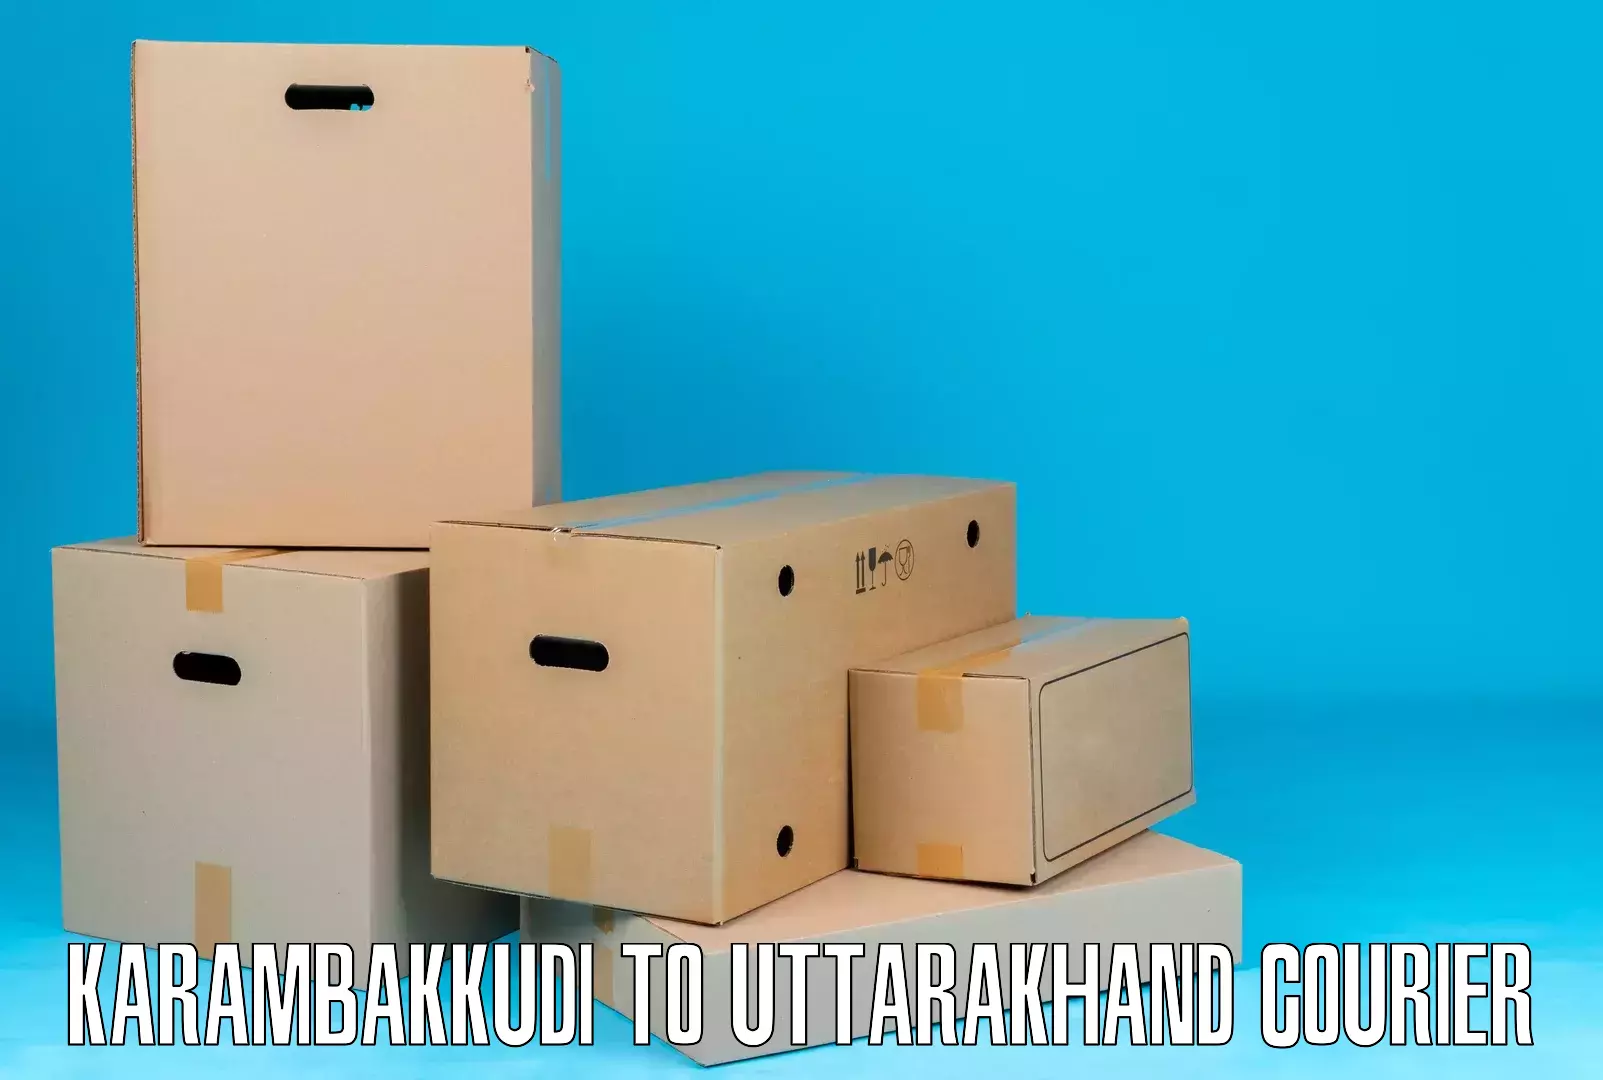 Specialized shipment handling Karambakkudi to Lansdowne